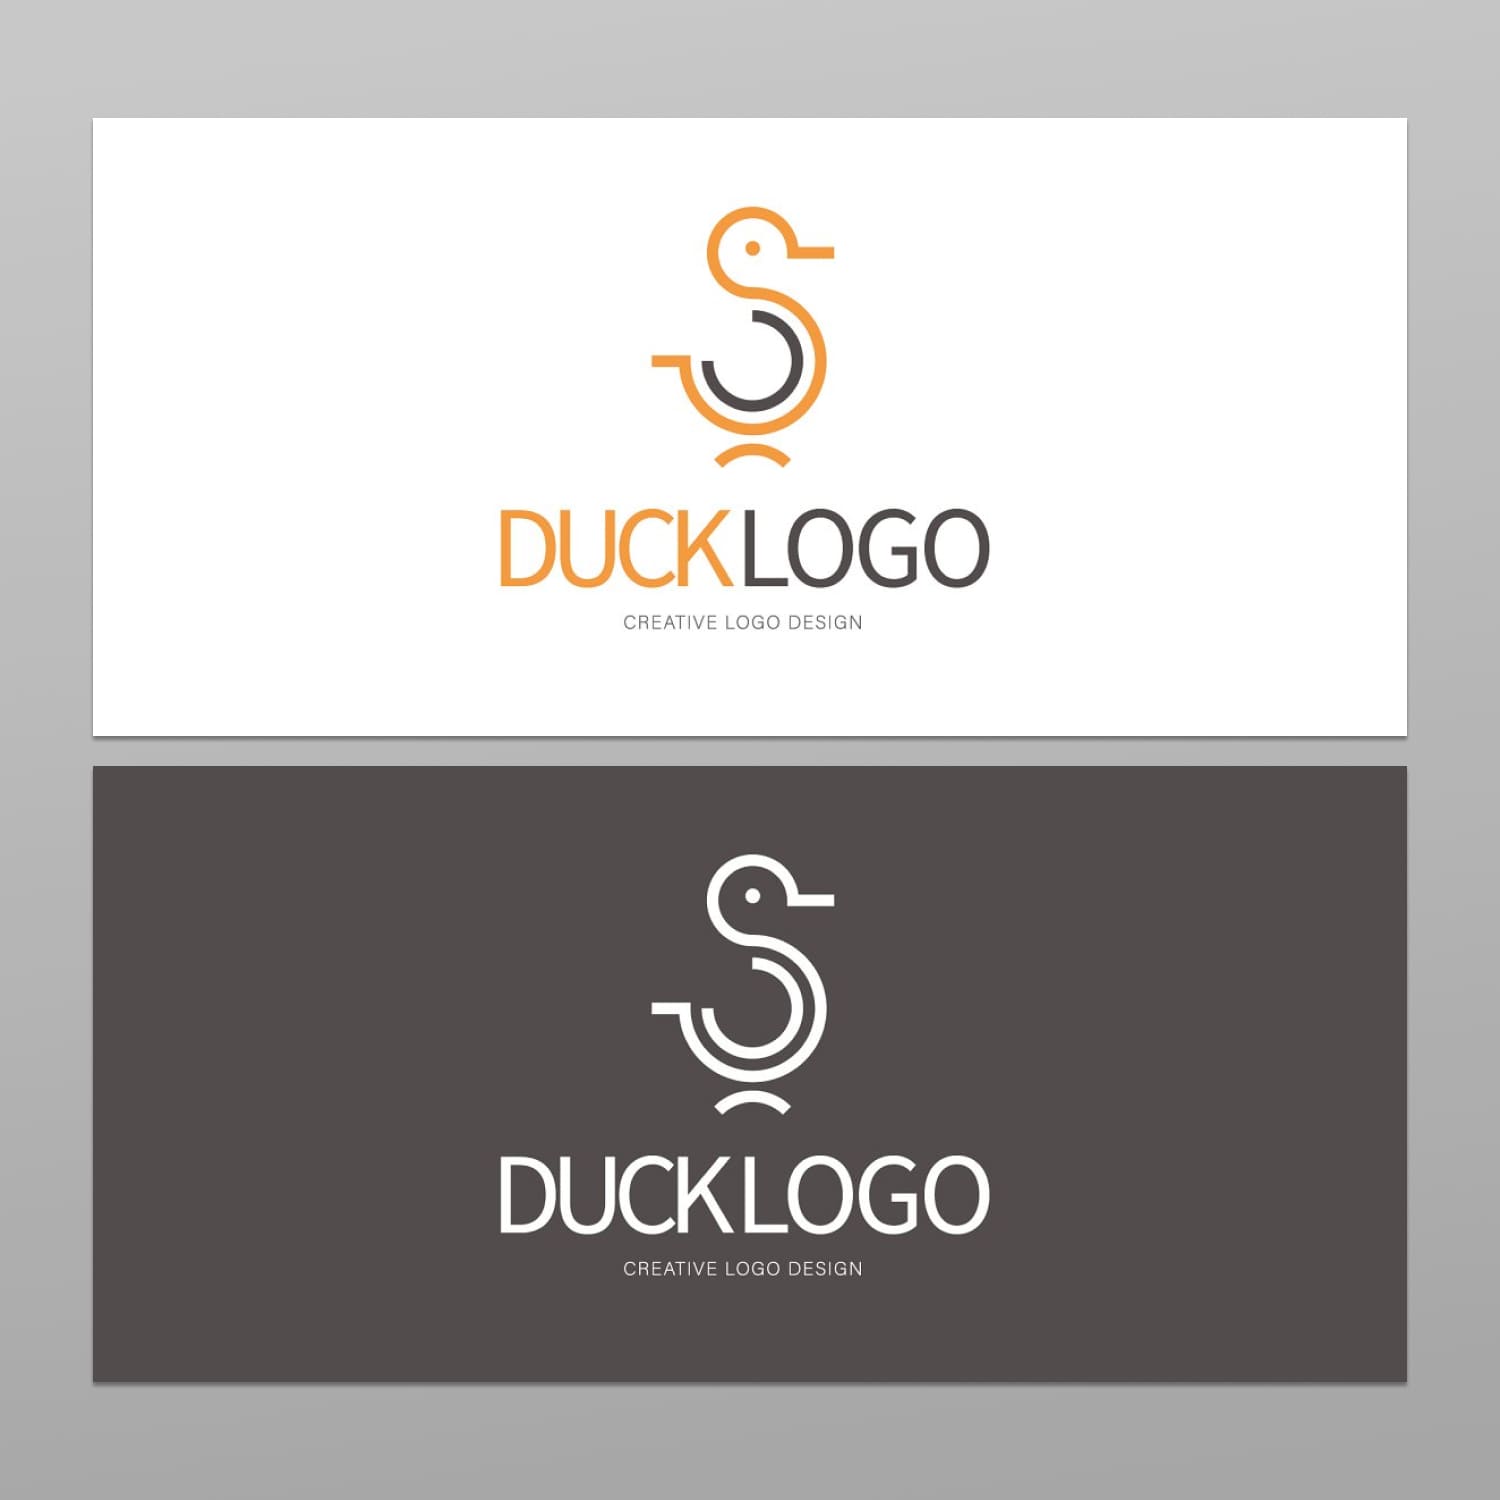 Duck logos cover.